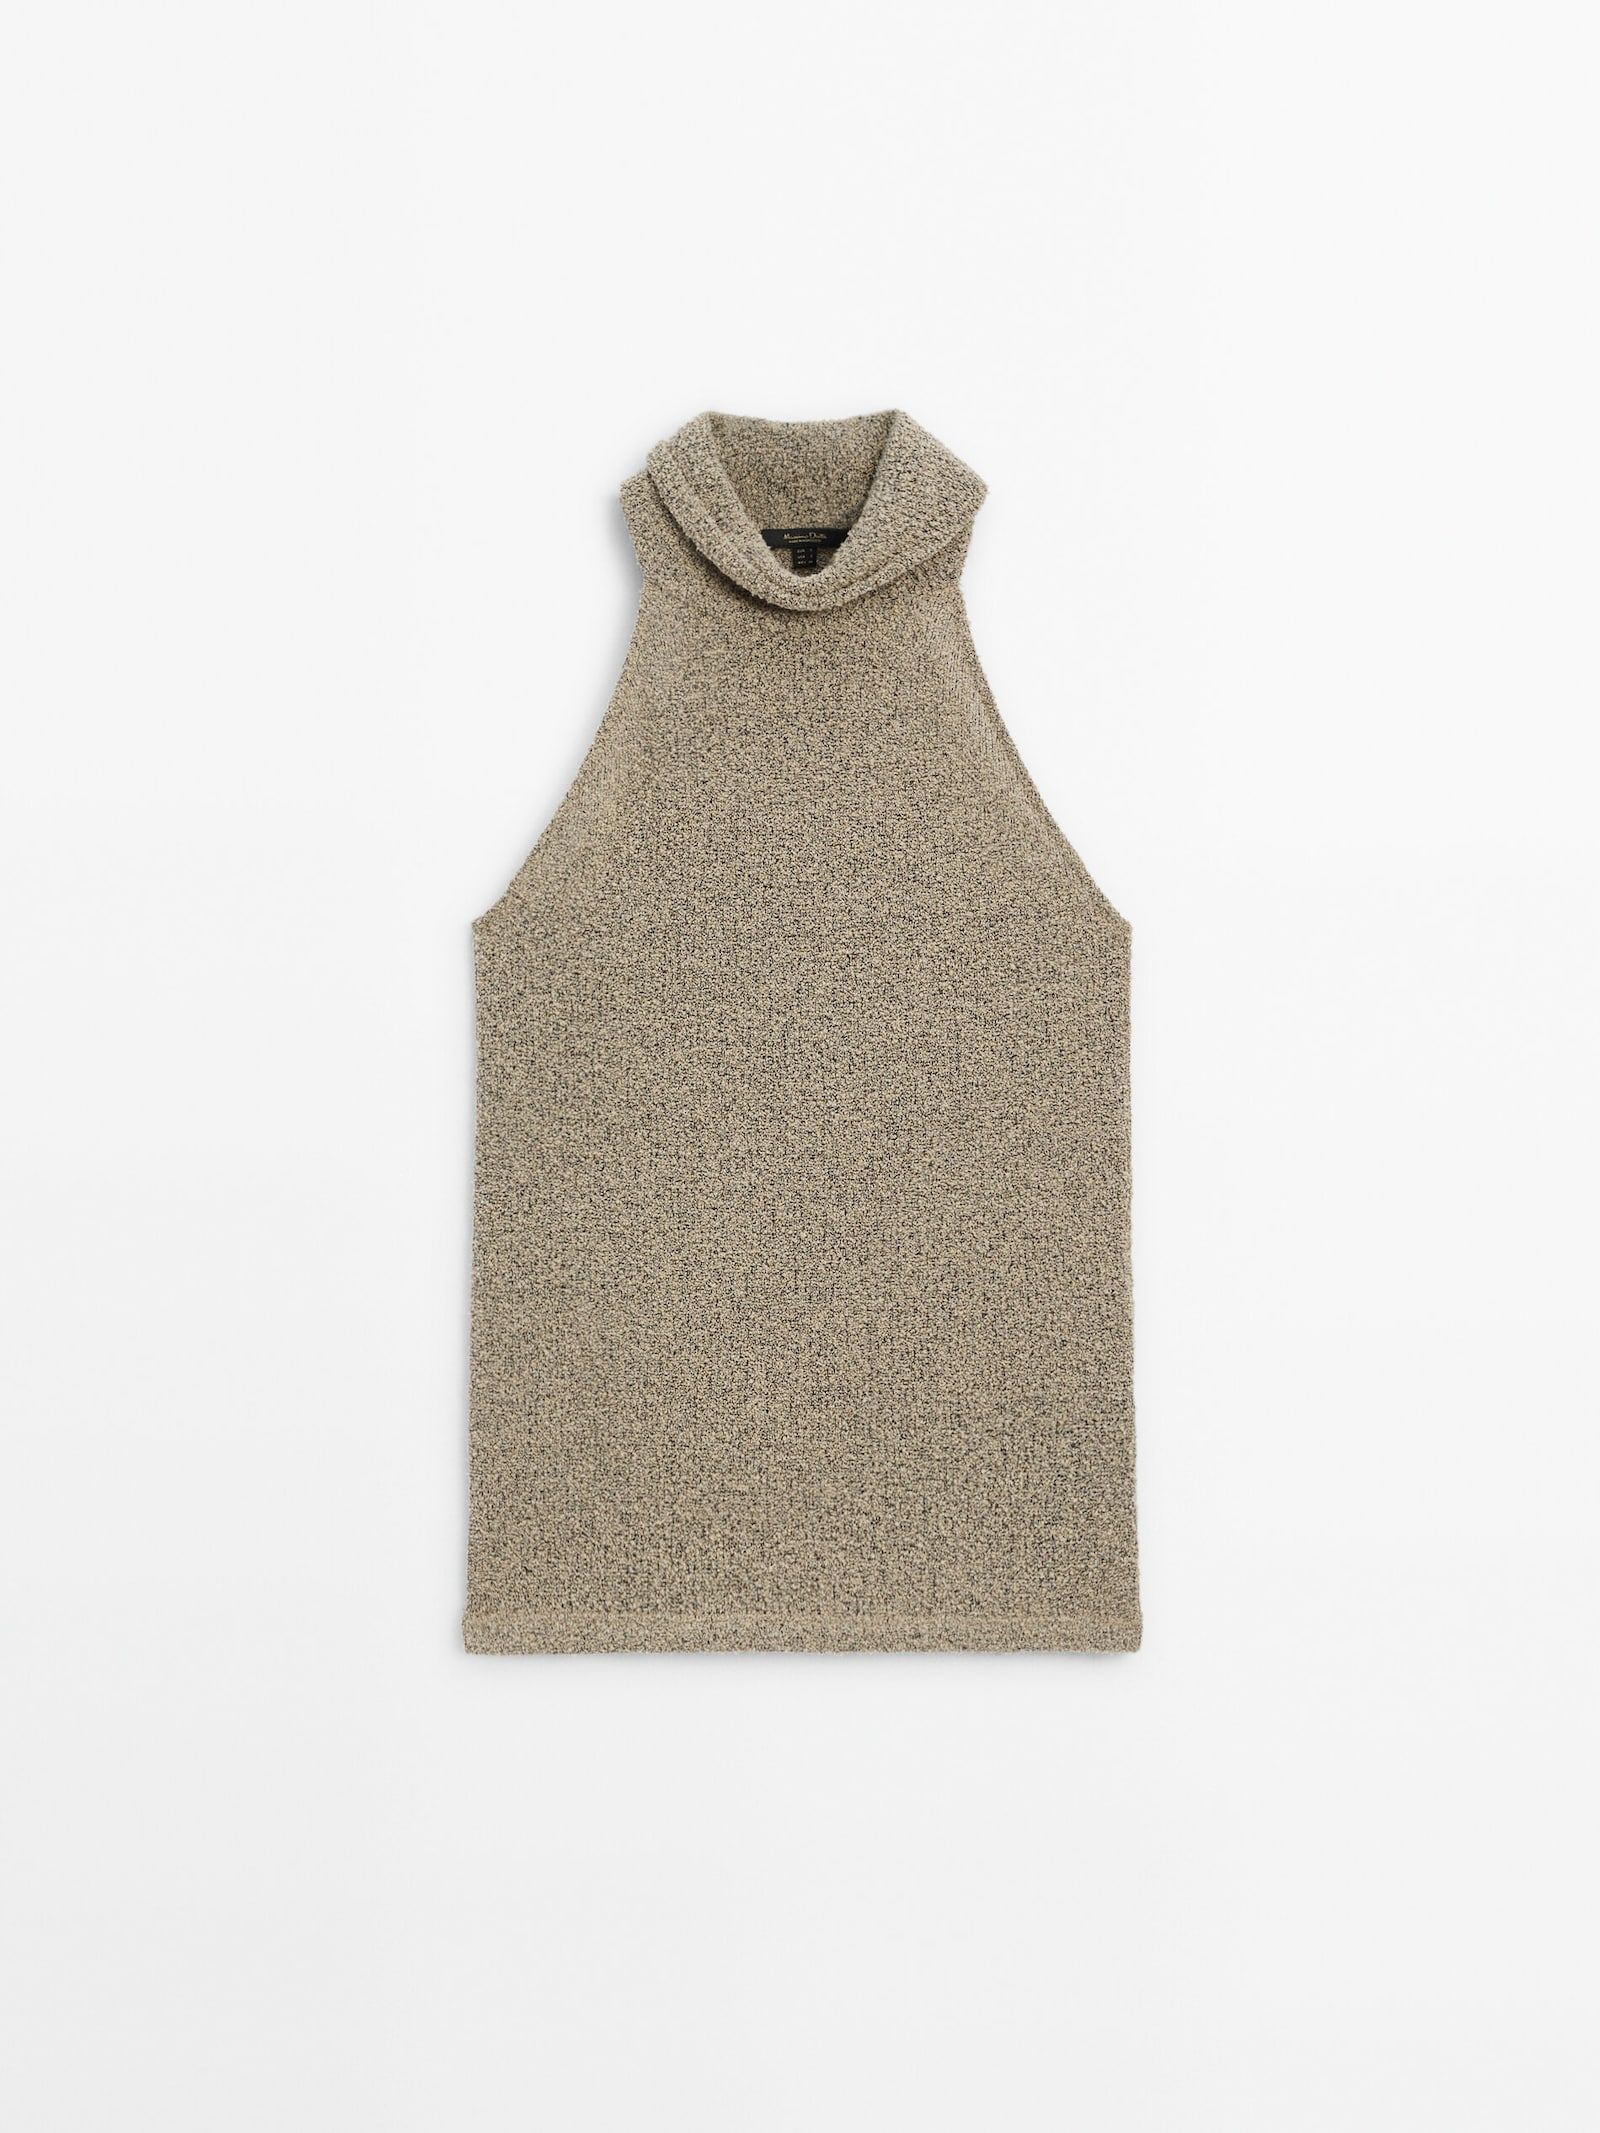 Ärmelloses Neckholder-Shirt mit Textur | Massimo Dutti DE